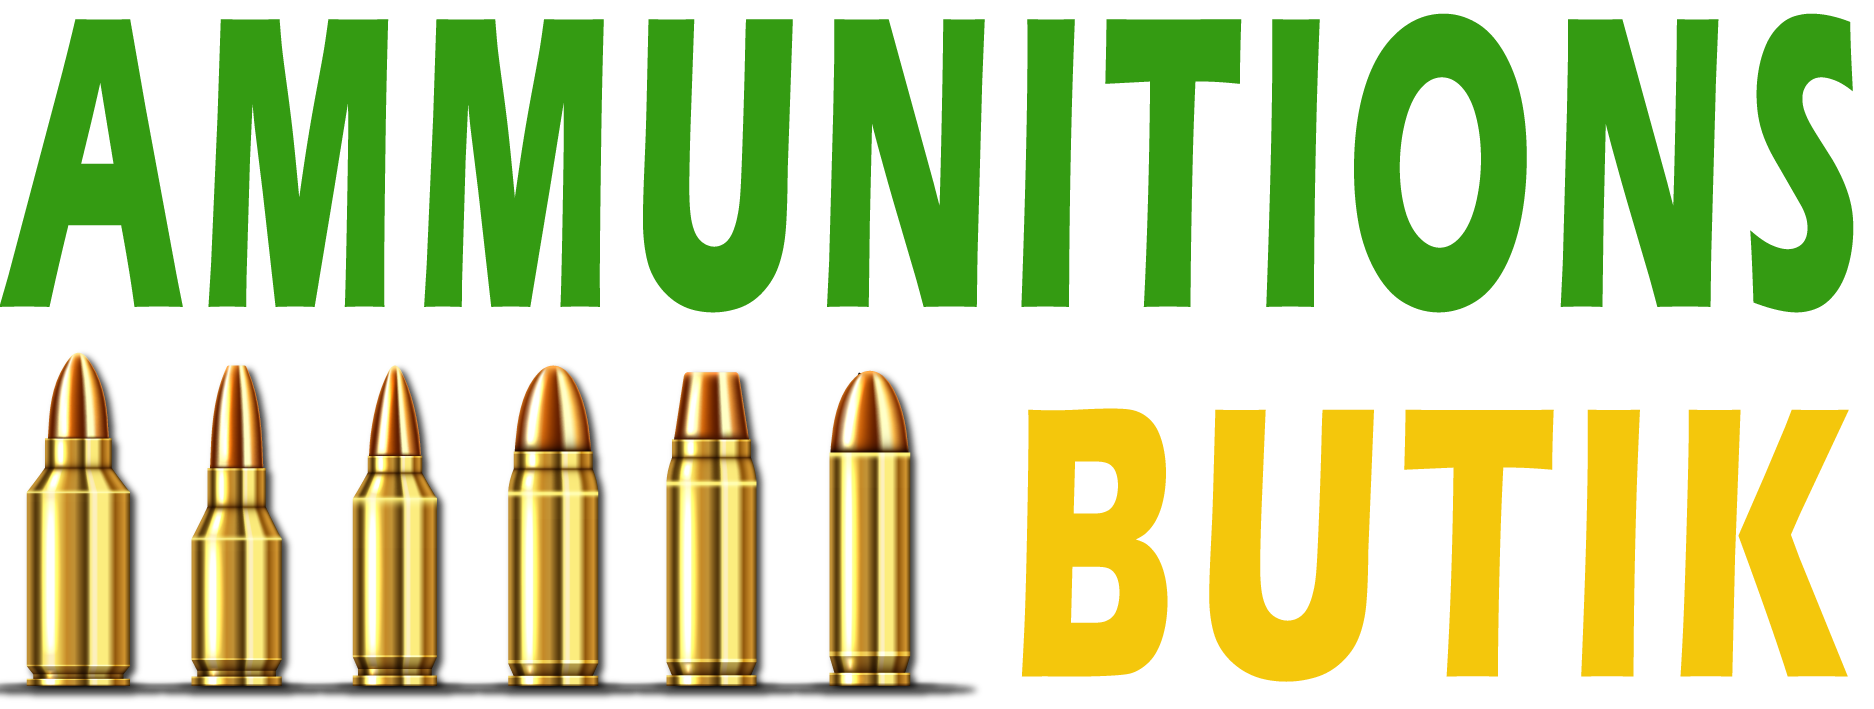 Ammunitions Butik